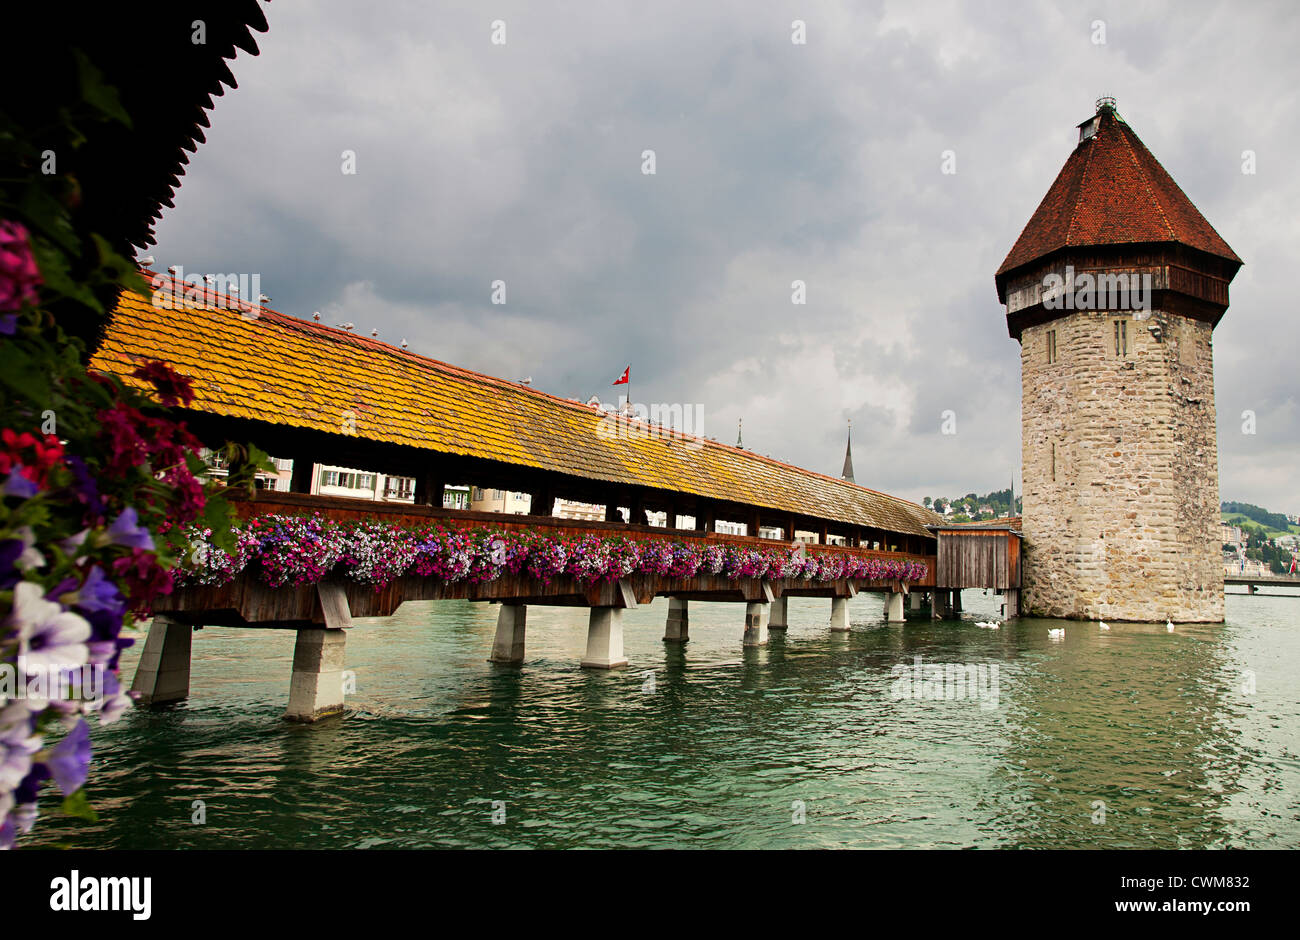 Europa. Schweiz. Luzern. Kapellbrücke (Kapellbrücke), eine Holzbrücke, die erstmals im 14. Jahrhundert errichtet. Stockfoto